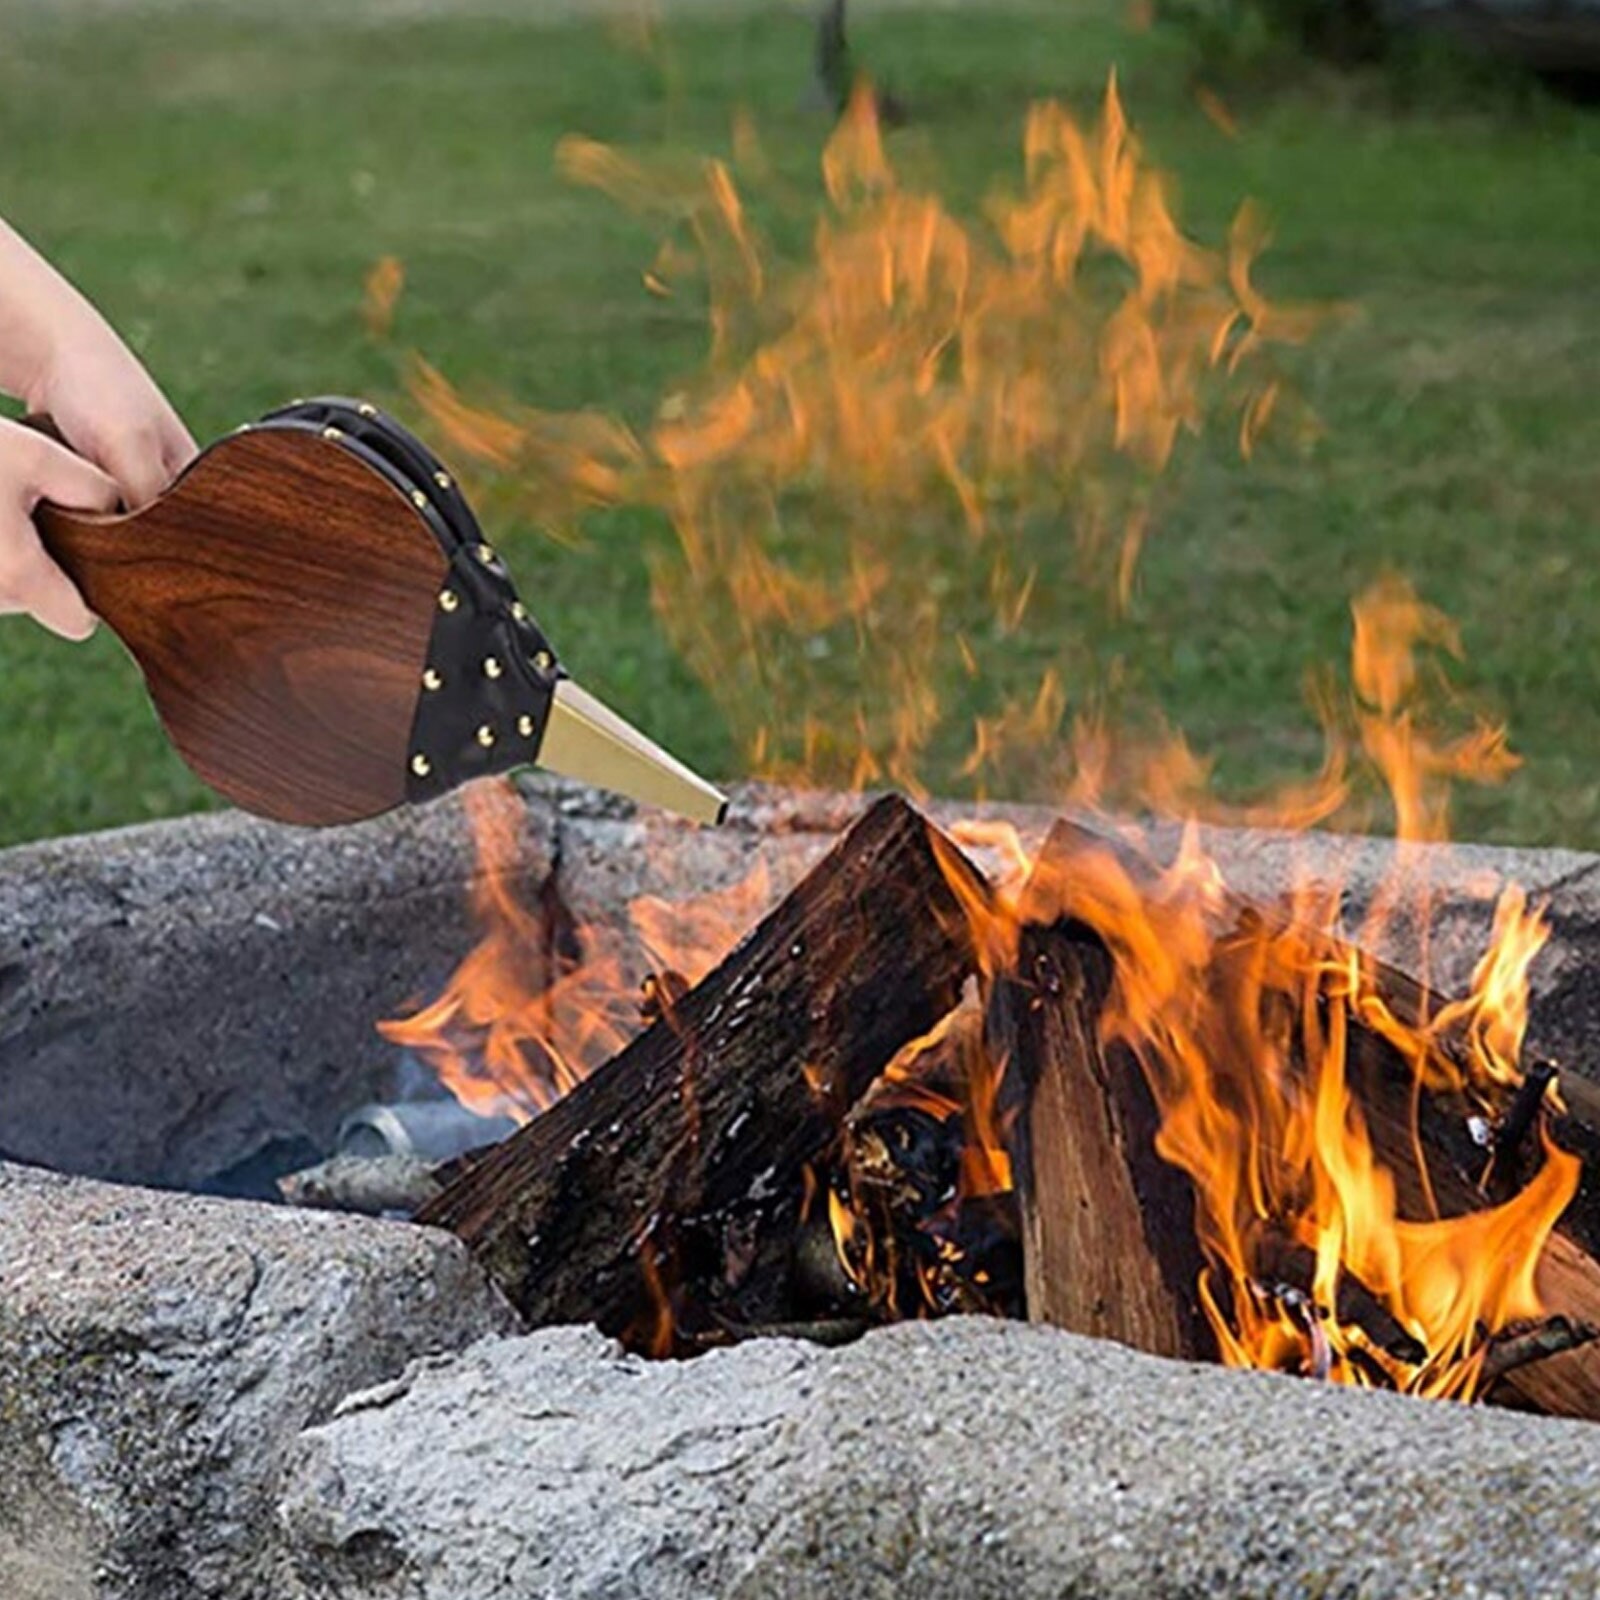 Behogar træ manuel håndlavet luftblæser blæser til grill ildbælge udendørs madlavning picnic camping vandreture